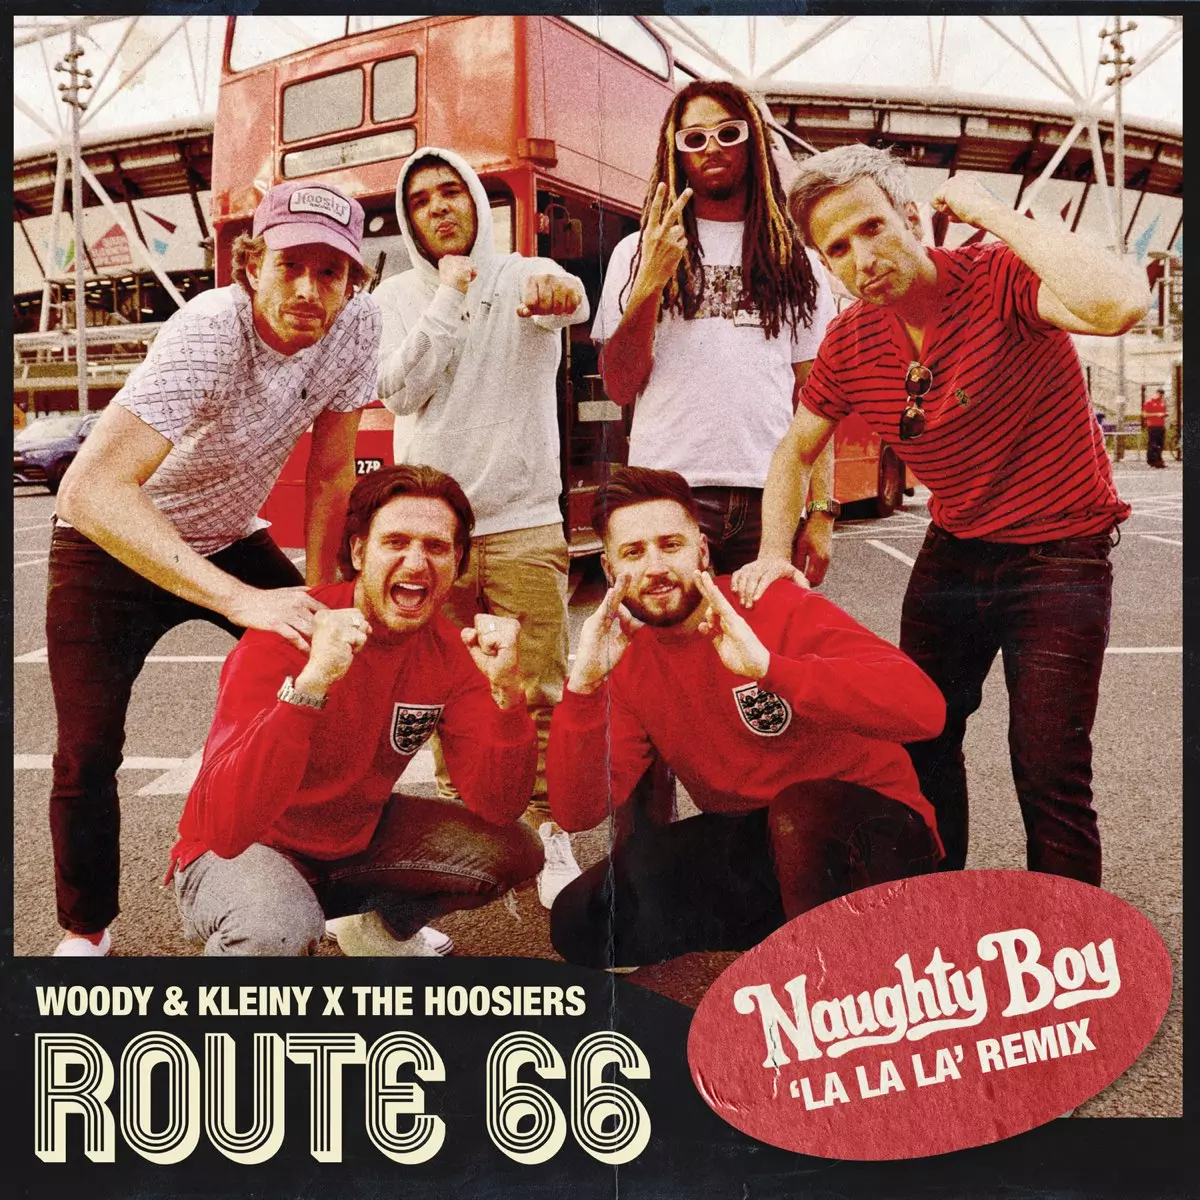 Route 66 (La La La Remix) - Single by Woody & Kleiny, Naughty Boy & The Hoosiers on Apple Music